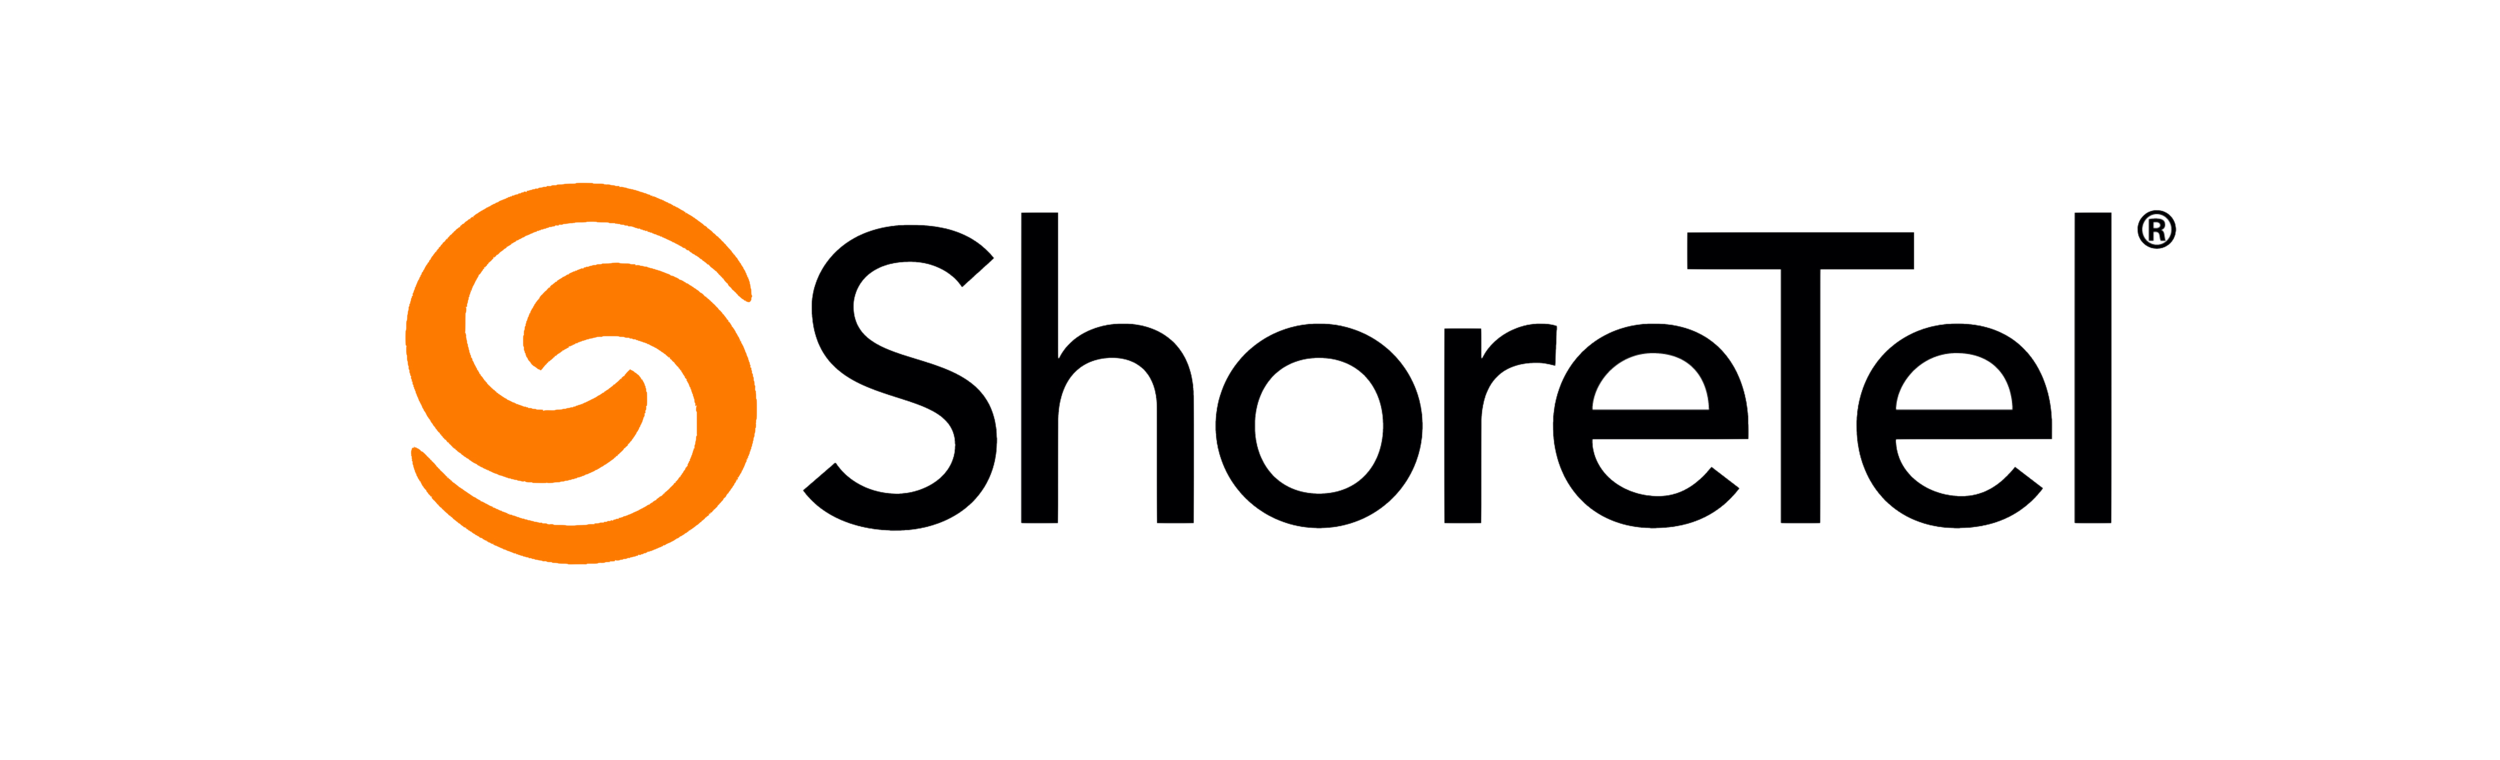 SHoretel Logo.png